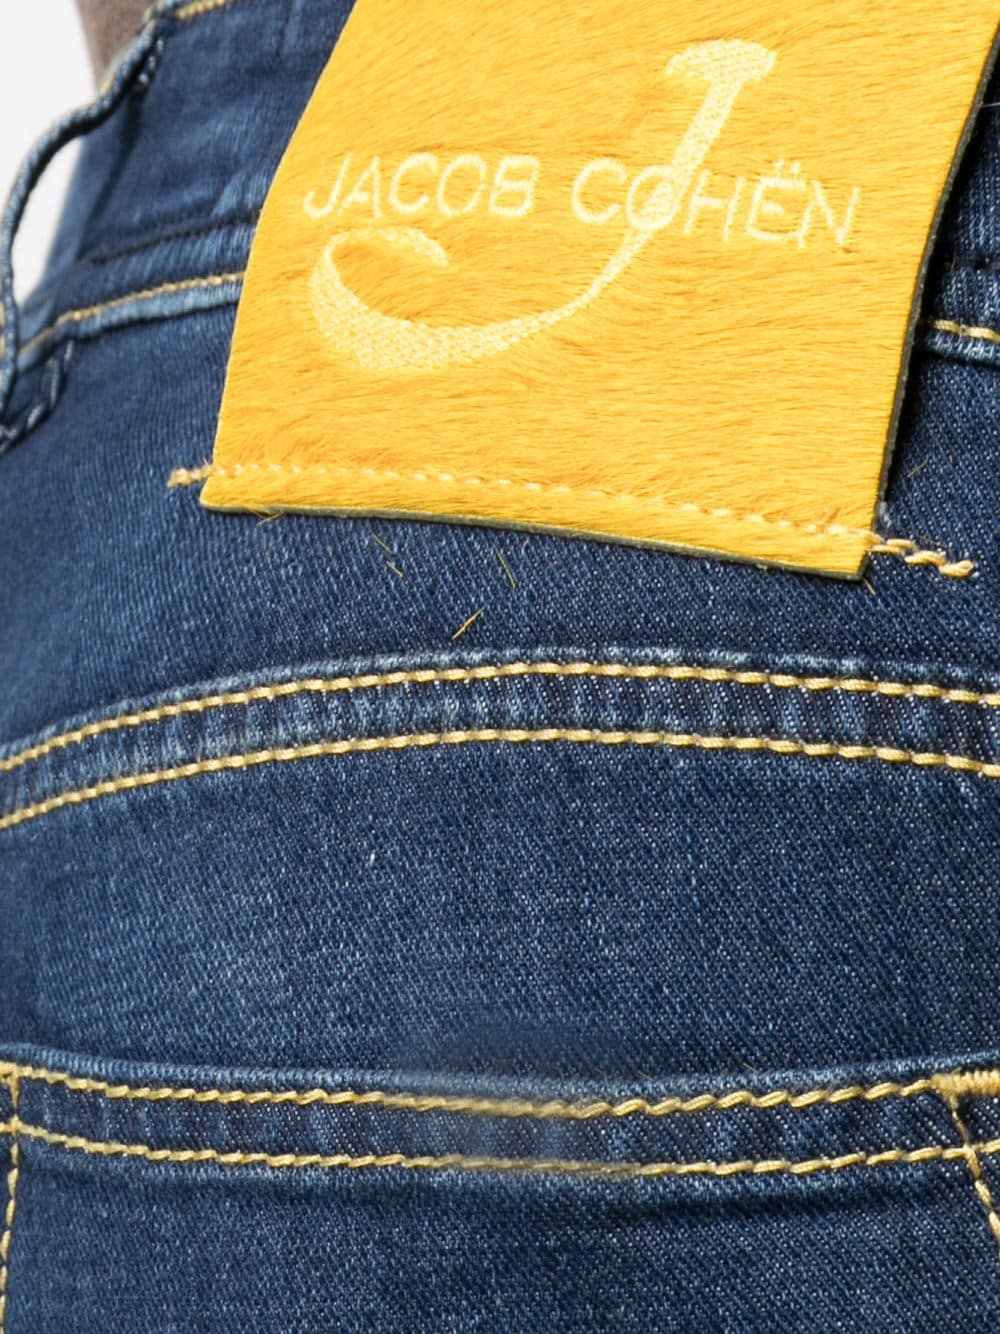 фото Jacob cohen прямые джинсы с завышенной талией